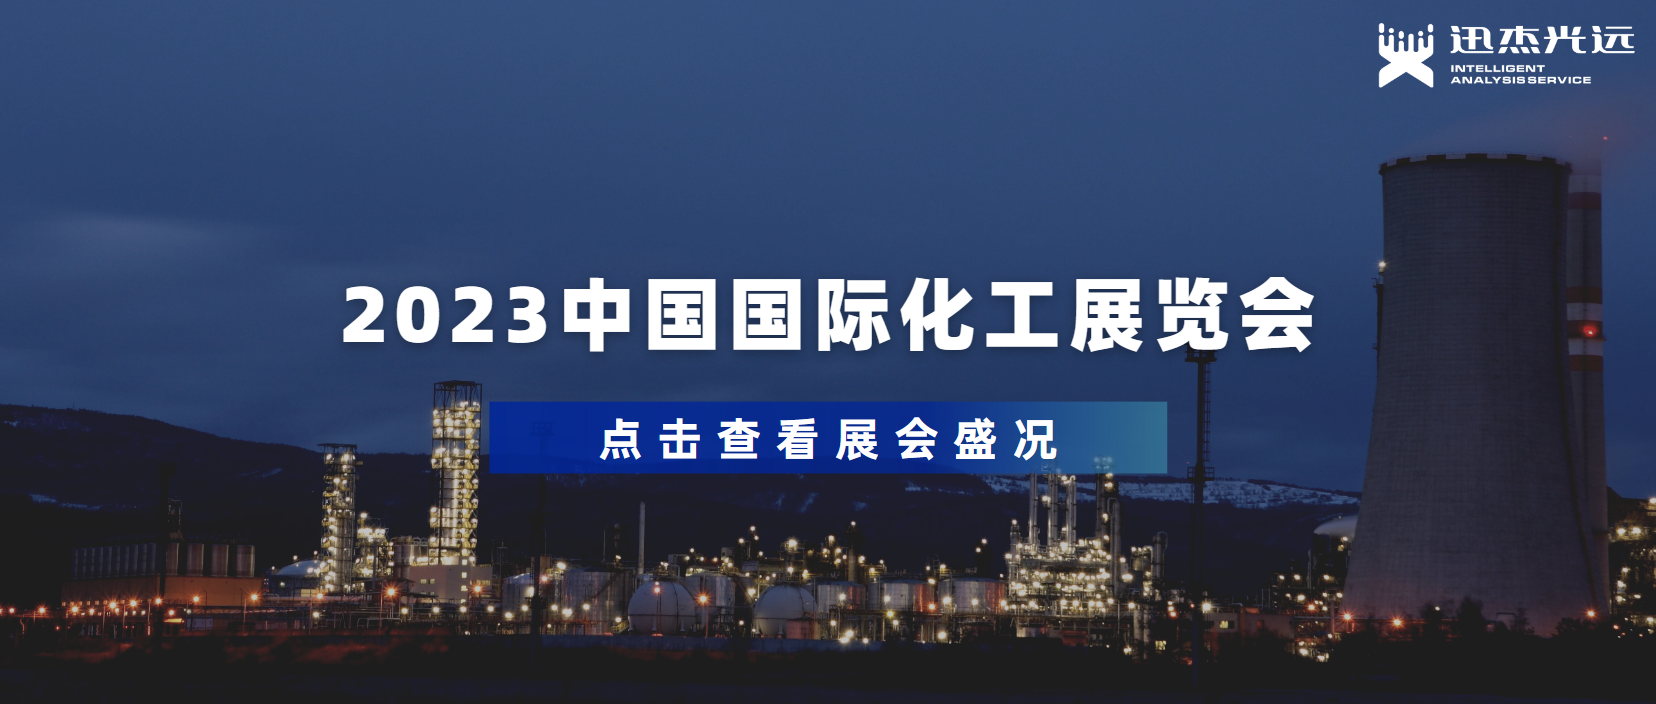 迅杰光远亮相2023中国国际化工展览会，助推化工行业欣欣向荣！